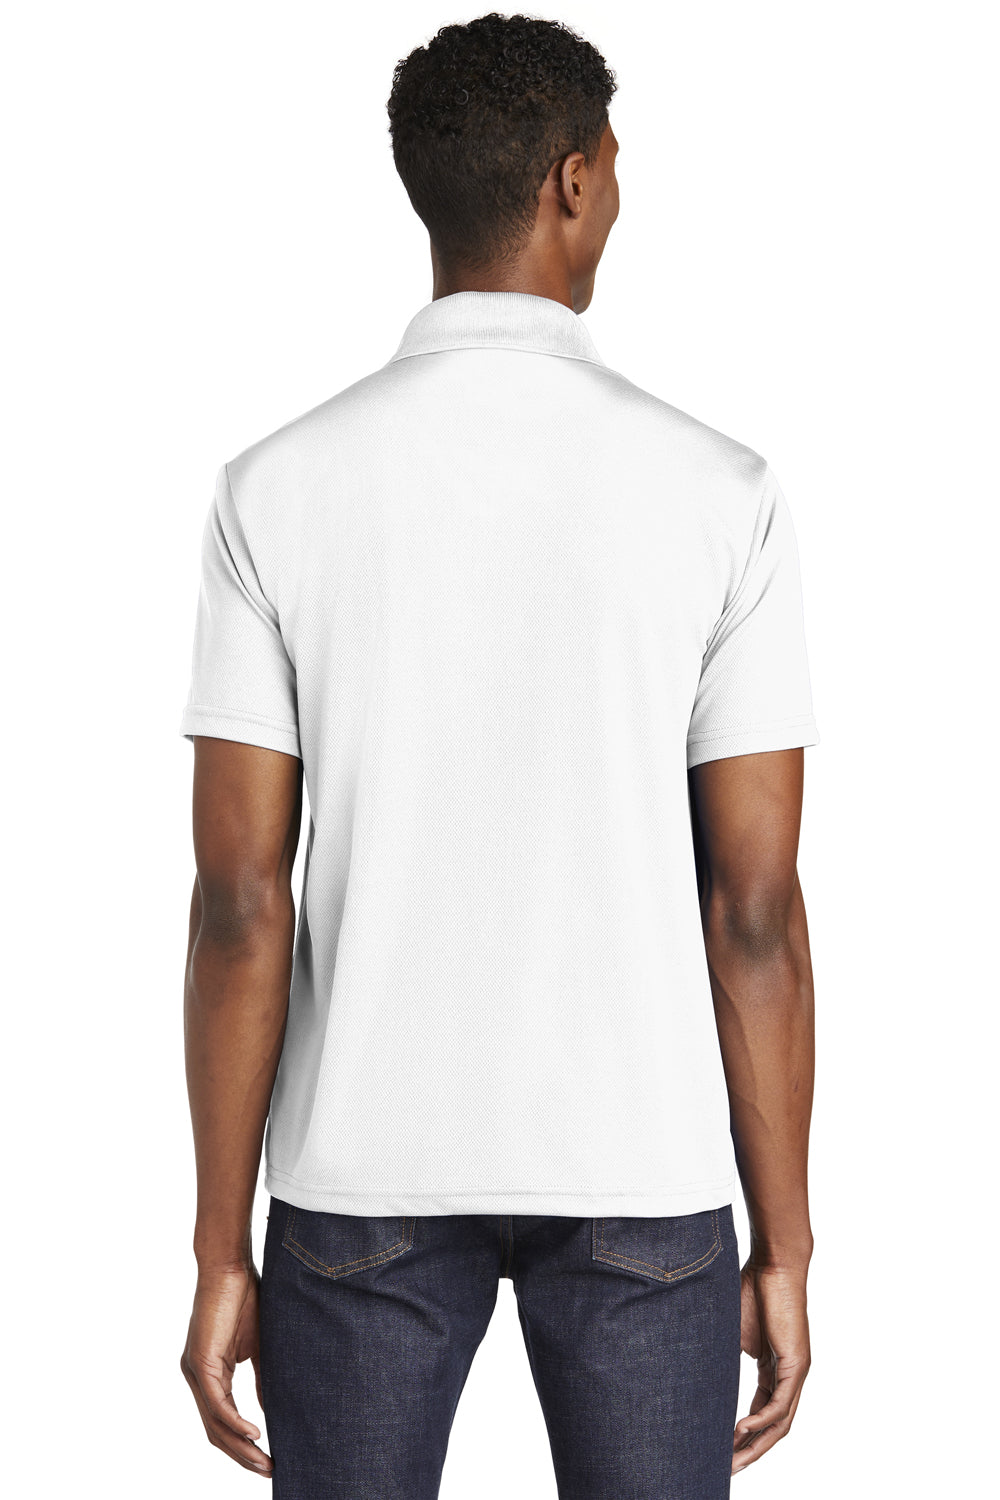 Sport-Tek ST640 Mens RacerMesh Moisture Wicking Short Sleeve Polo Shirt White Back